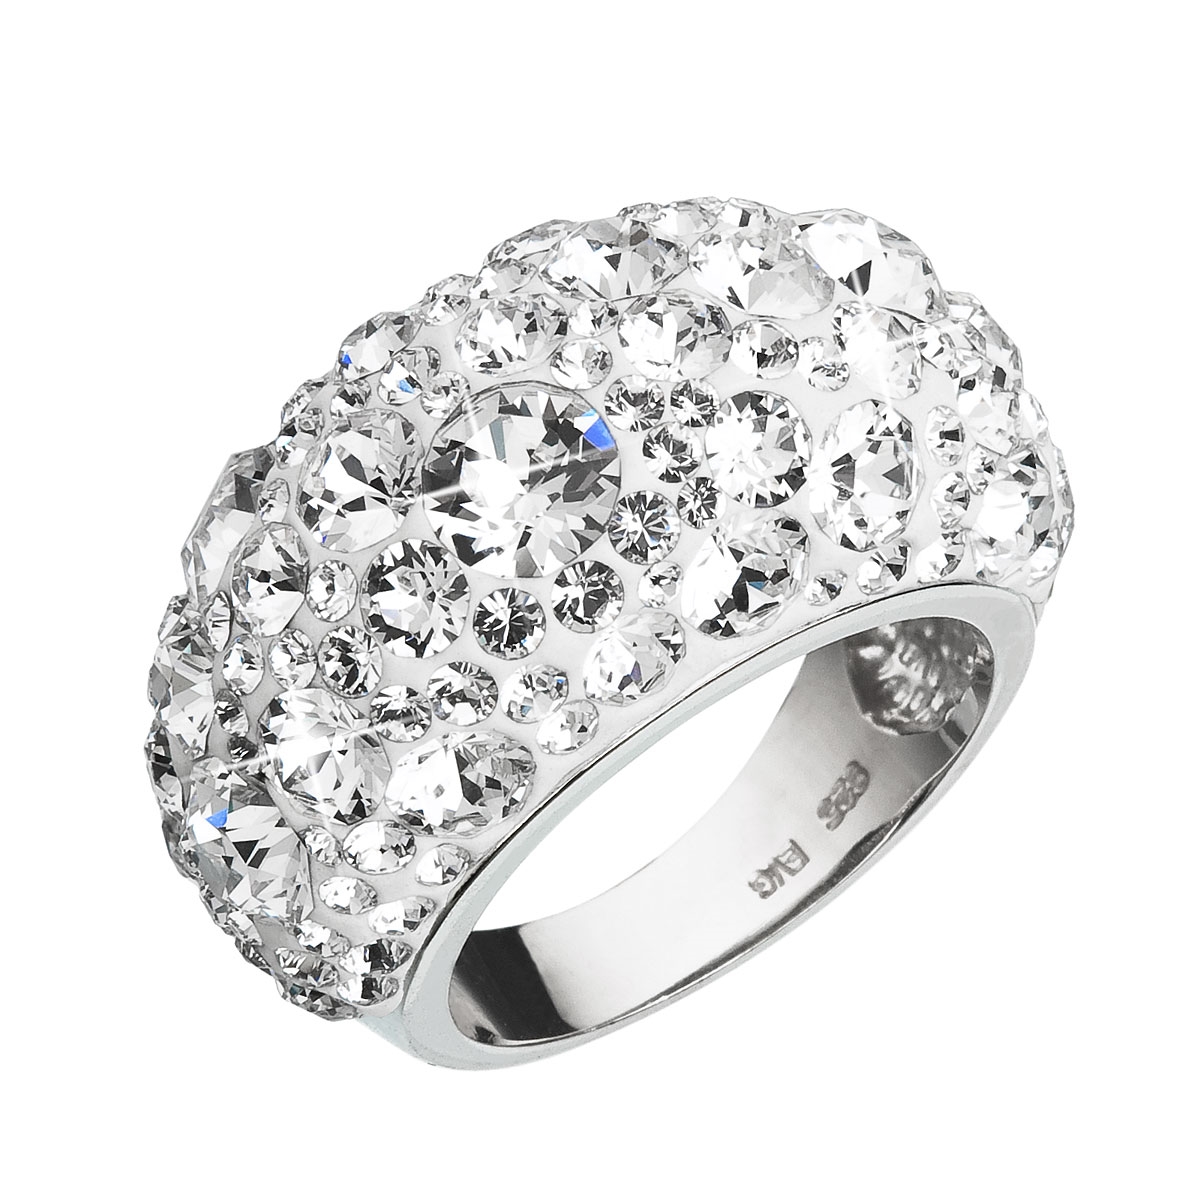 Strieborný prsteň s kryštálmi Crystals from Swarovski ®, Crystal